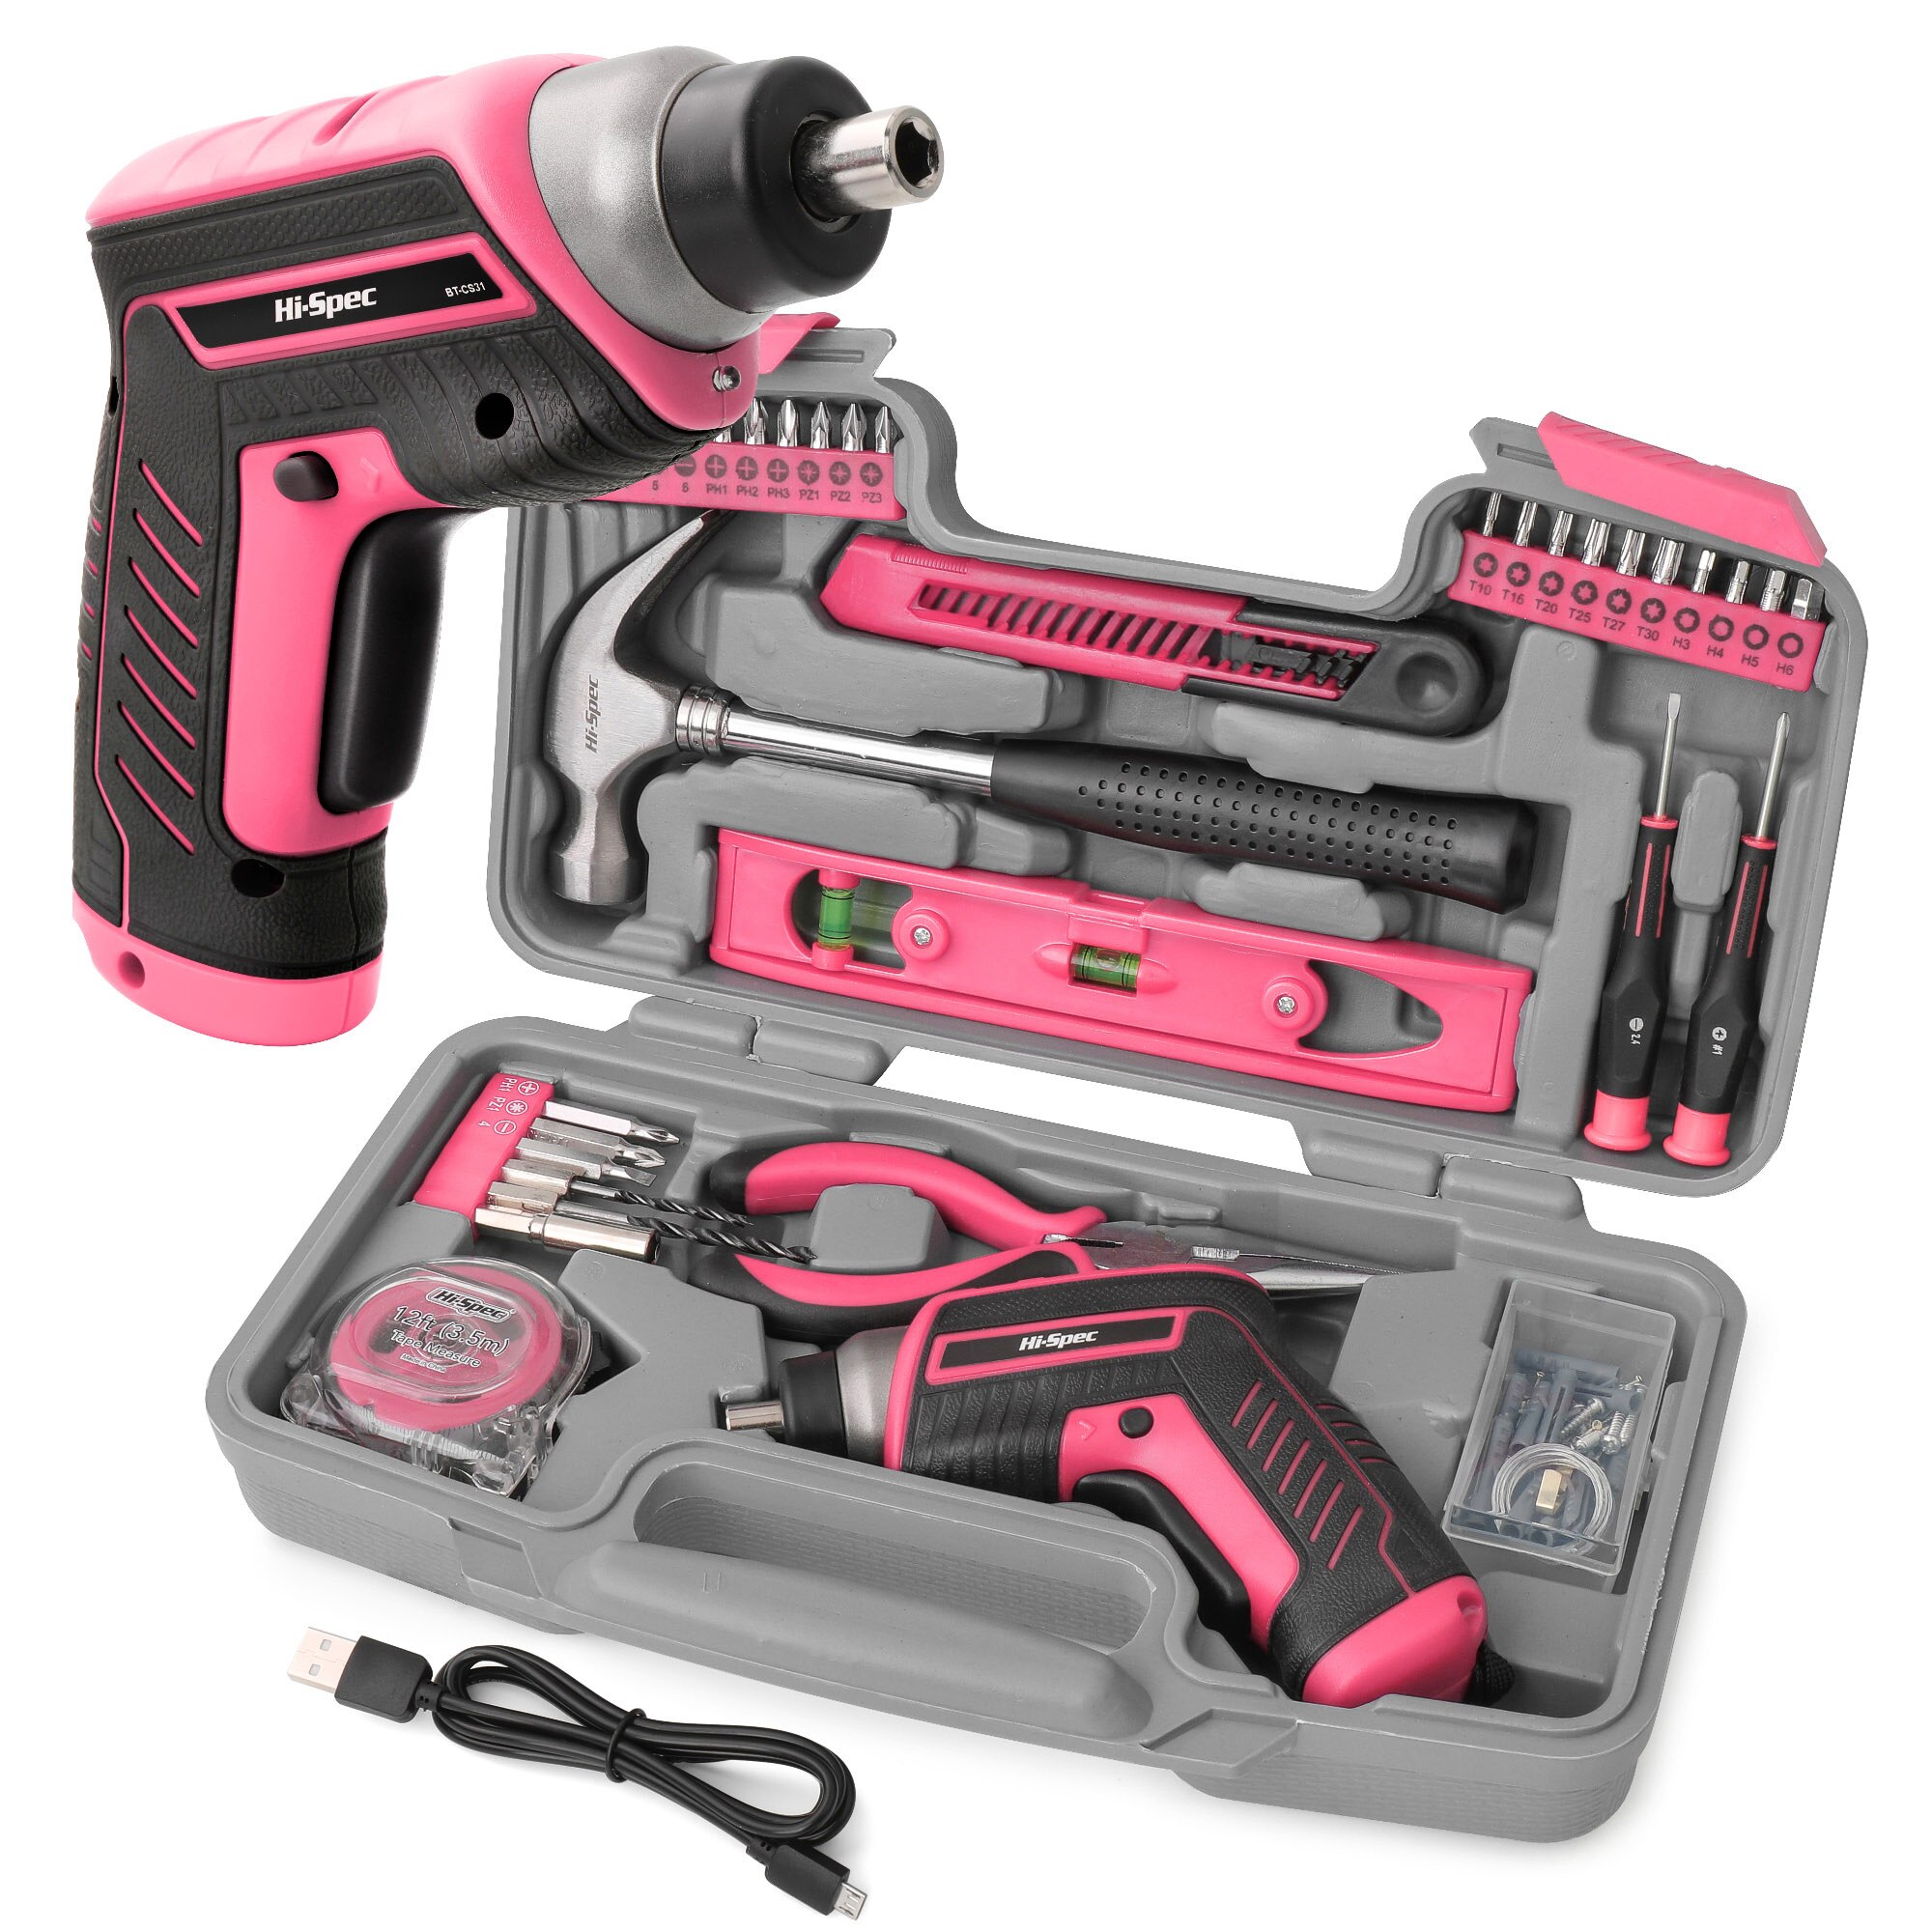 Hi-spec 35pc 4v usb elektrisk skruetrækker li-ion pink hjem diy husholdningsværktøj sæt håndværktøjssæt til gril dame kvinder